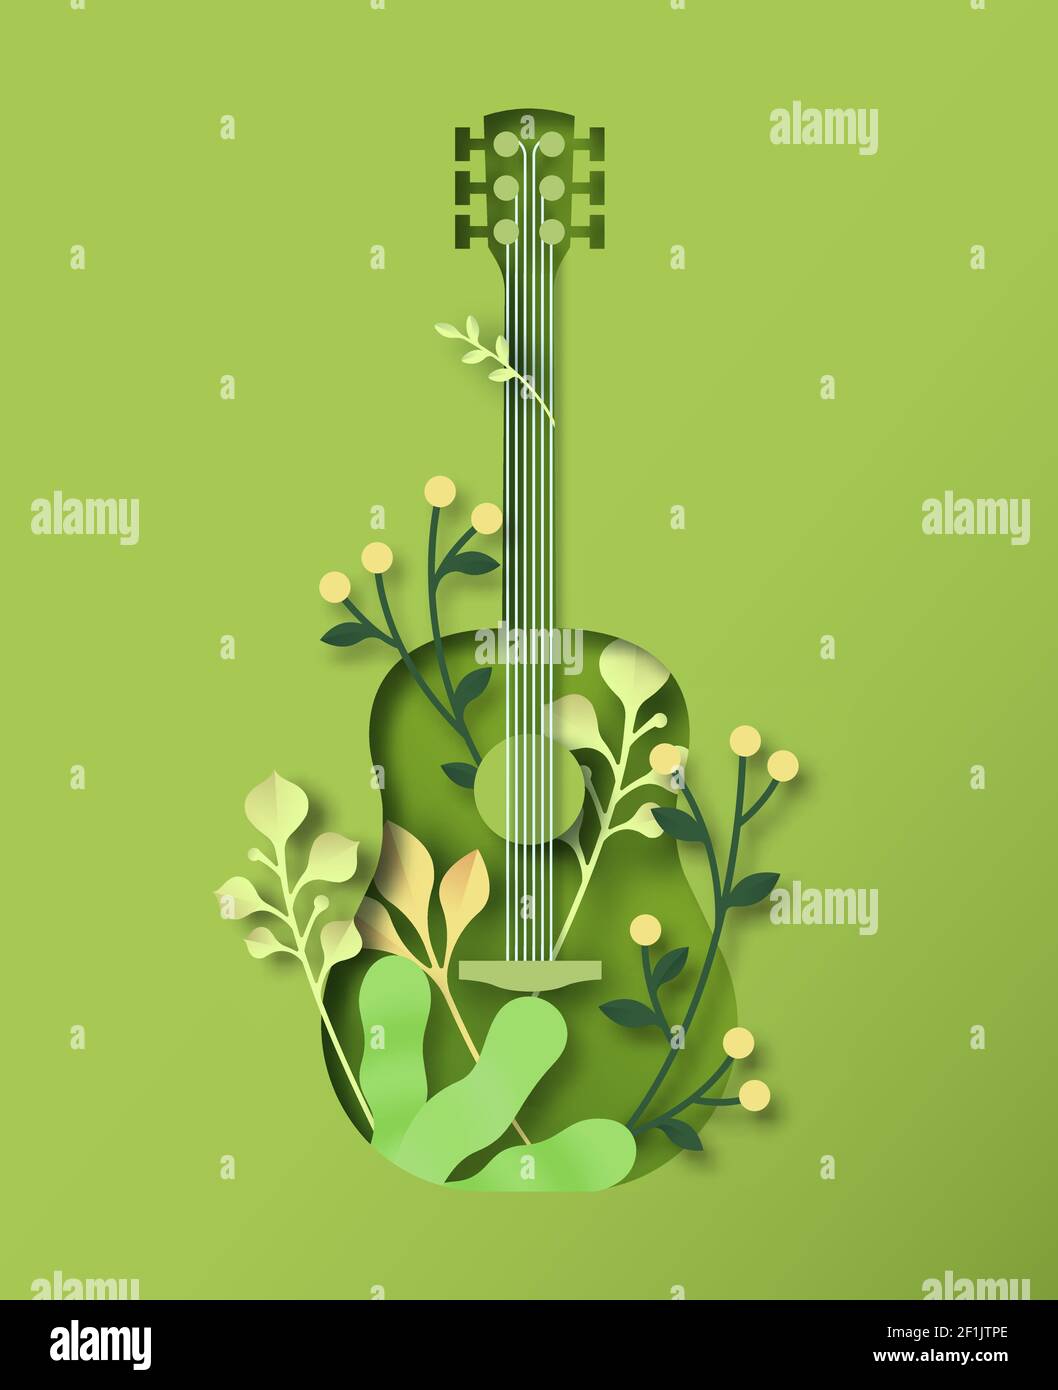 Strumento di chitarra acustica verde in stile artigianale con taglio di carta 3D con decorazione naturale e foglia di pianta. Suoni della natura, musica dal vivo illustrazione di eventi c Illustrazione Vettoriale